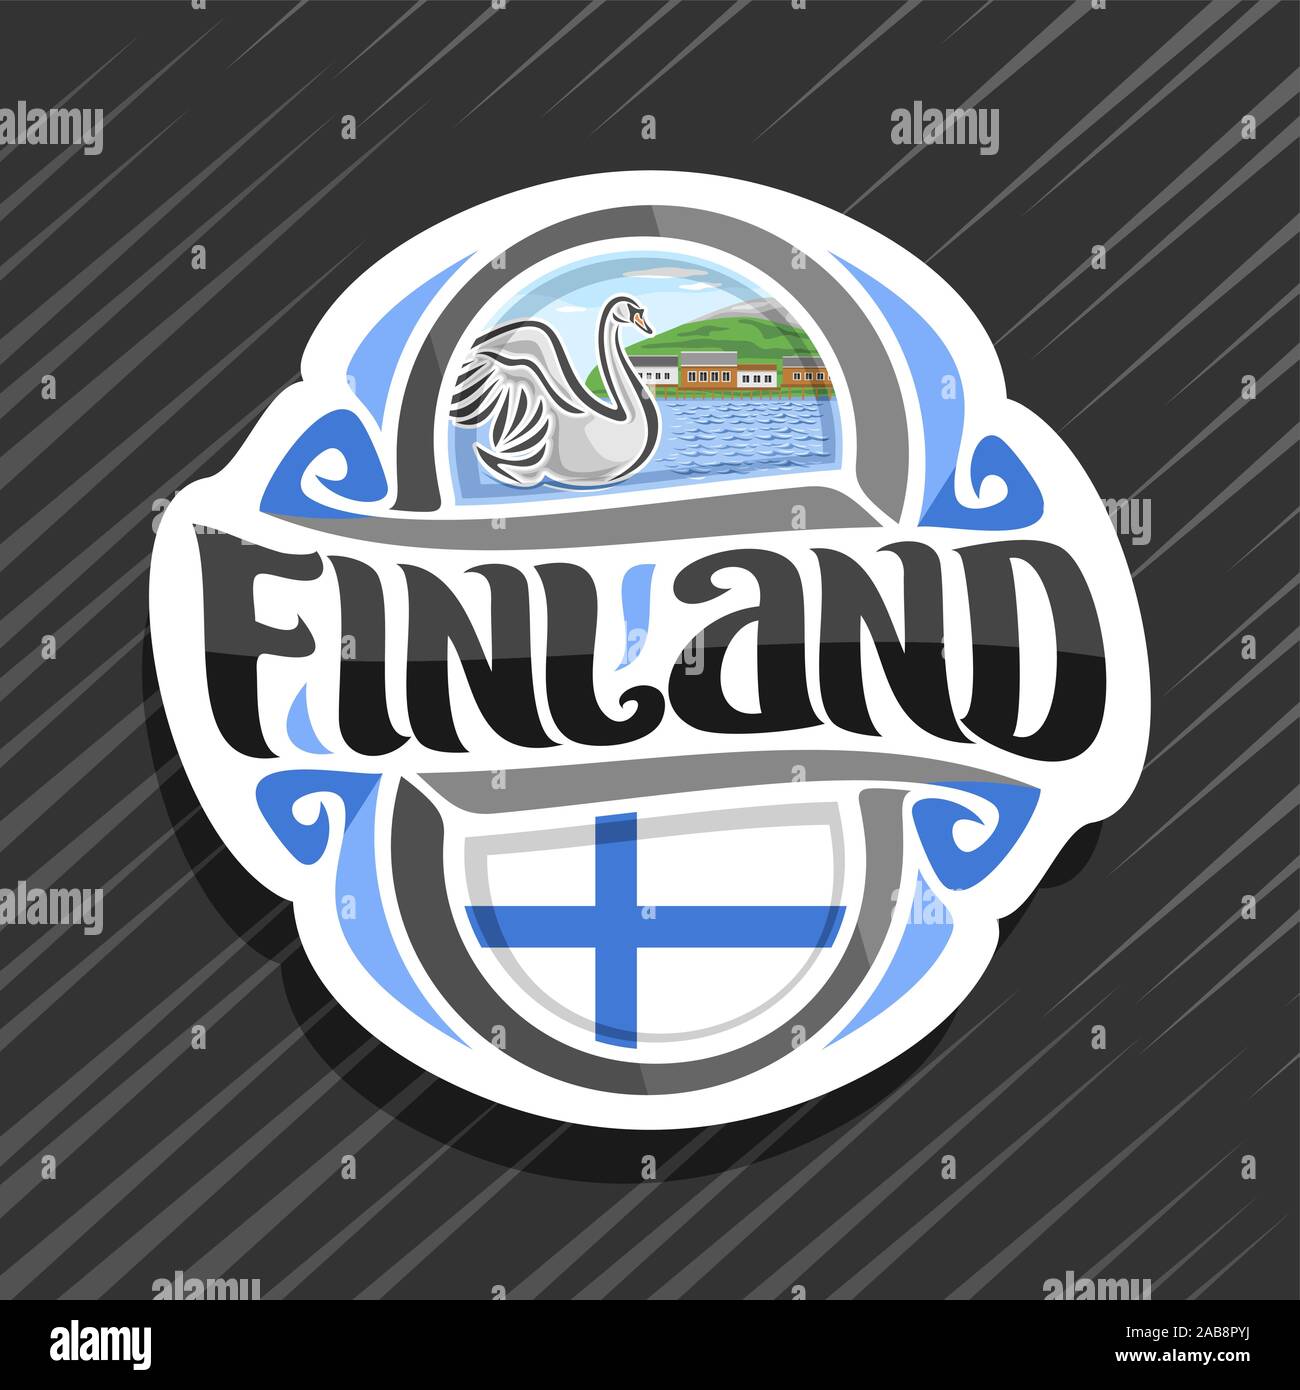 Il logo del vettore per la Finlandia paese, frigo magnete con bandiera finlandese, spazzola originale carattere tipografico per parola Finlandia e simbolo finlandese - White Swan nel lago di Illustrazione Vettoriale